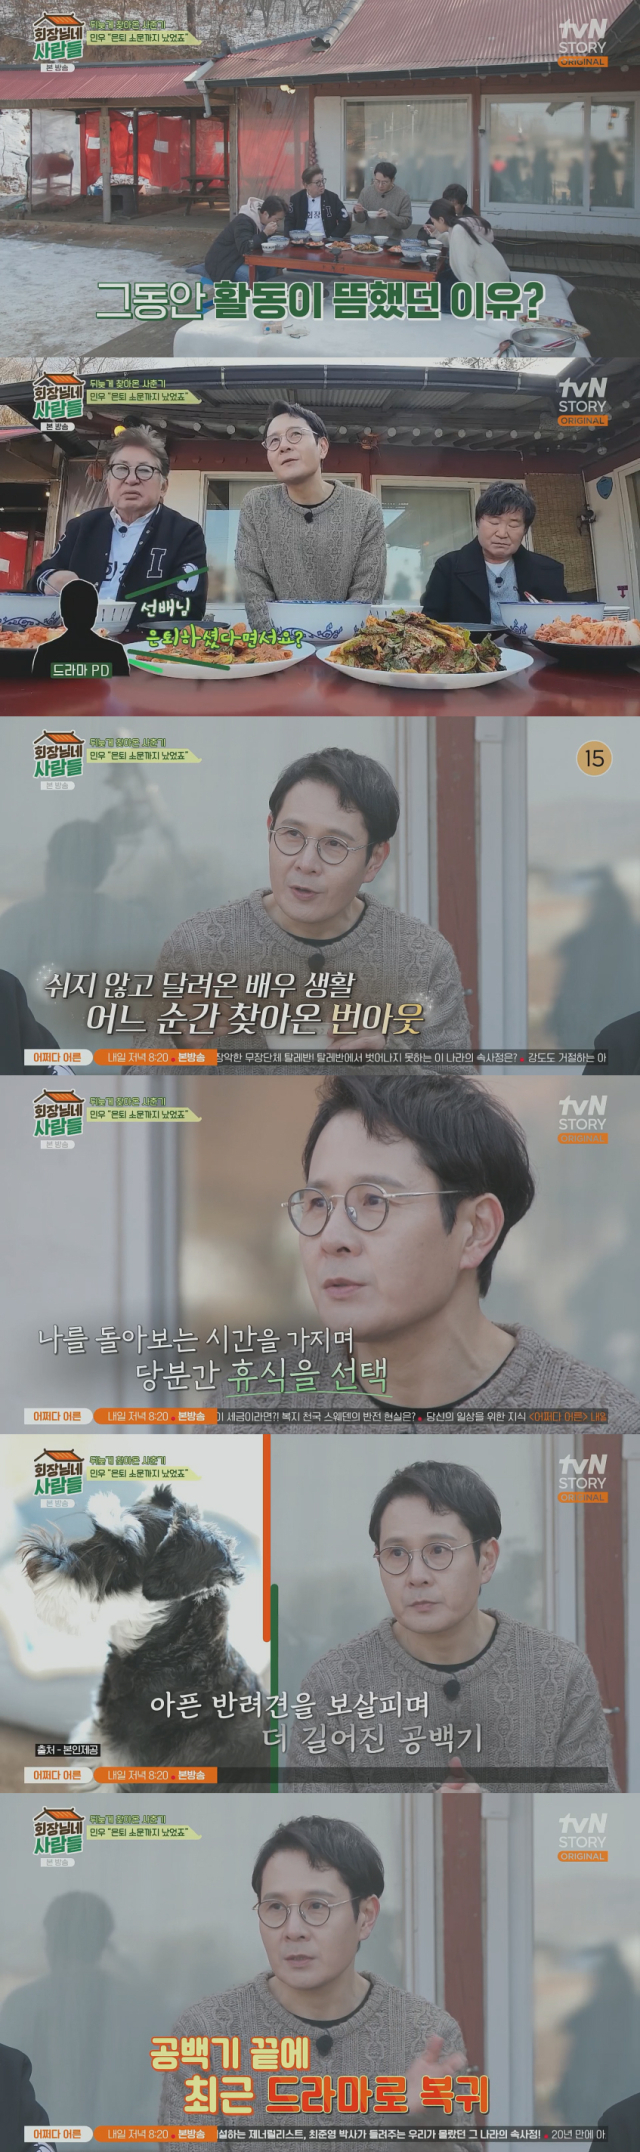 L'acteur Lee Min-woo a révélé la raison pour laquelle il est resté isolé pendant environ 5 ans, au point où la rumeur dit qu'il aurait pris sa retraite./Chaîne câblée tvN STORY Capture d'écran du programme de divertissement « The Chairman's People »